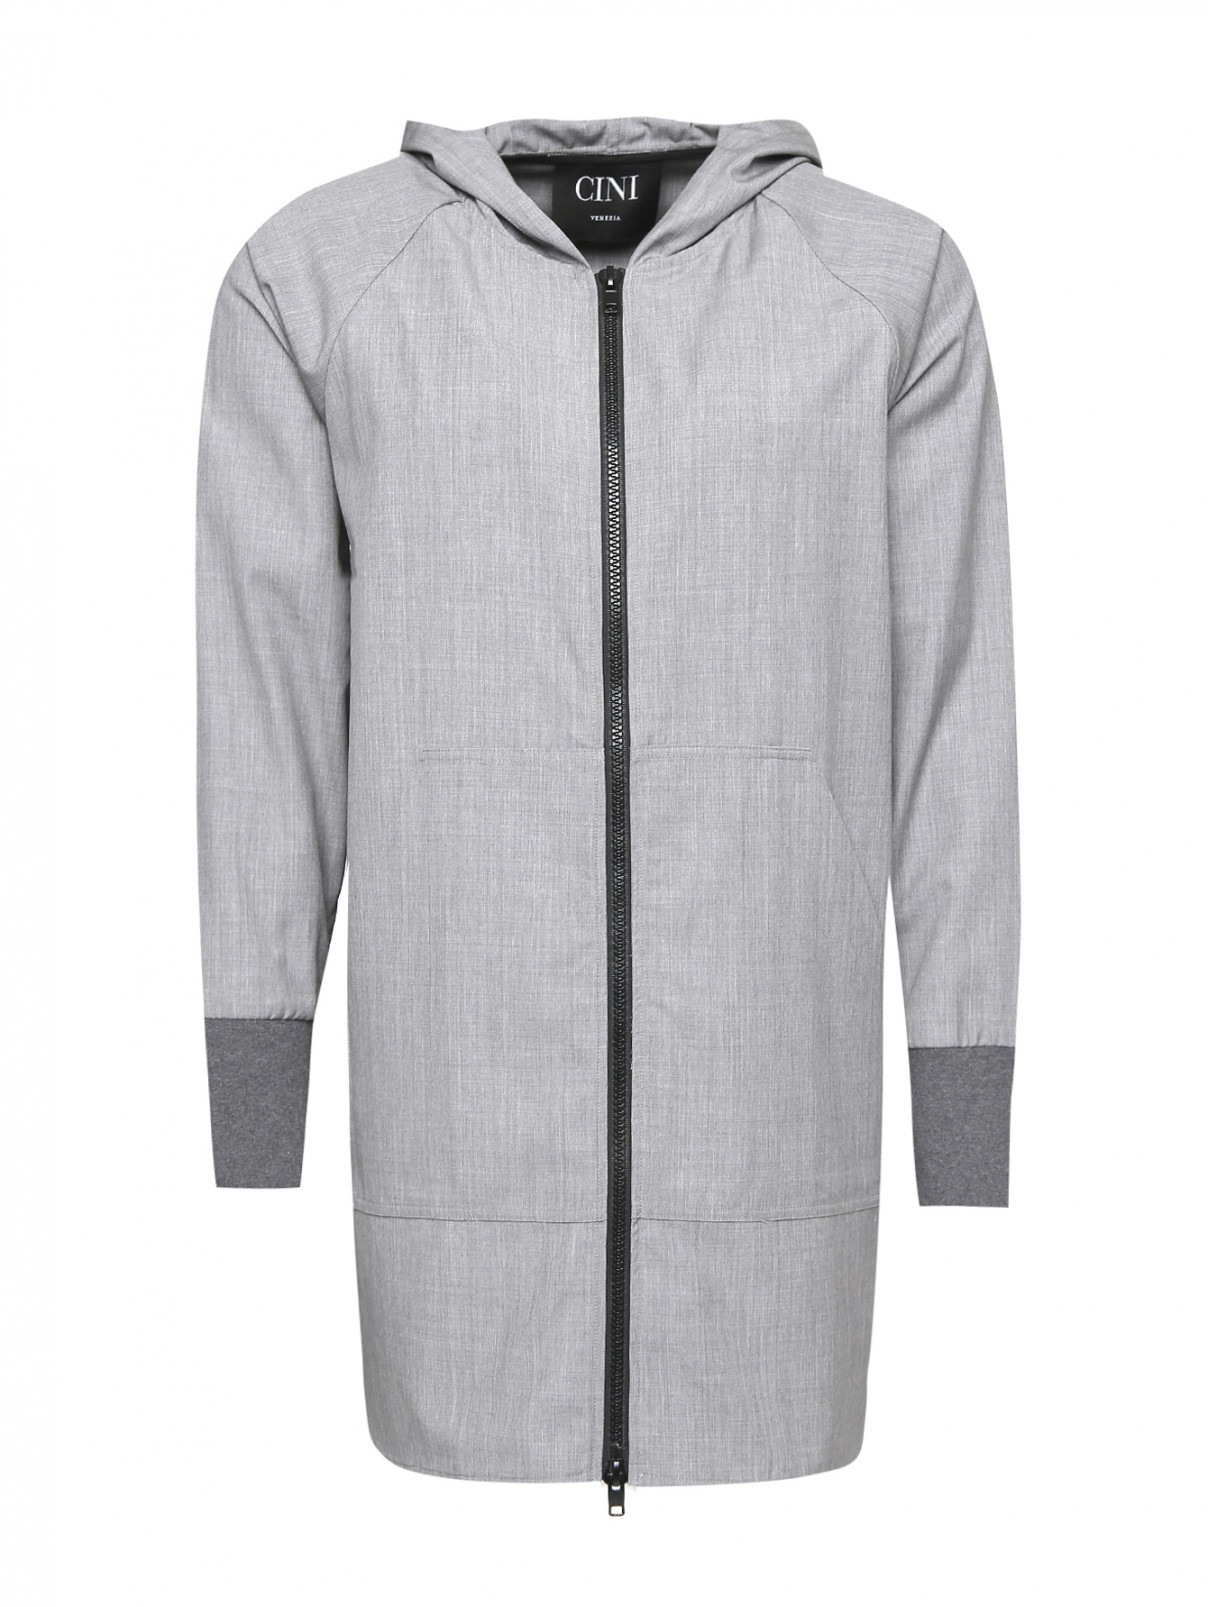 Куртка на молнии с капюшоном Cini Venezia  –  Общий вид  – Цвет:  Серый